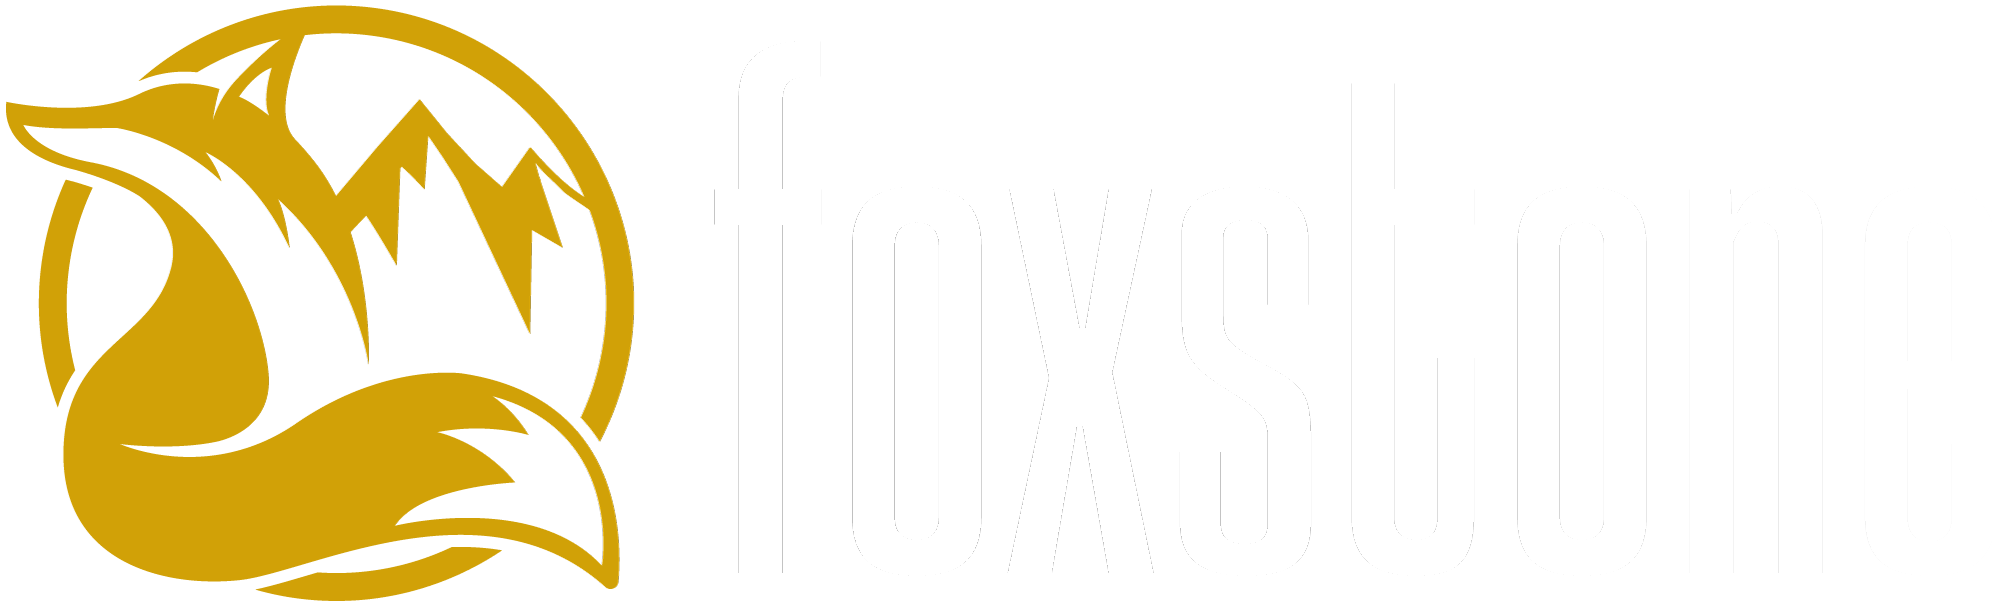 Foxstone-Logo-White